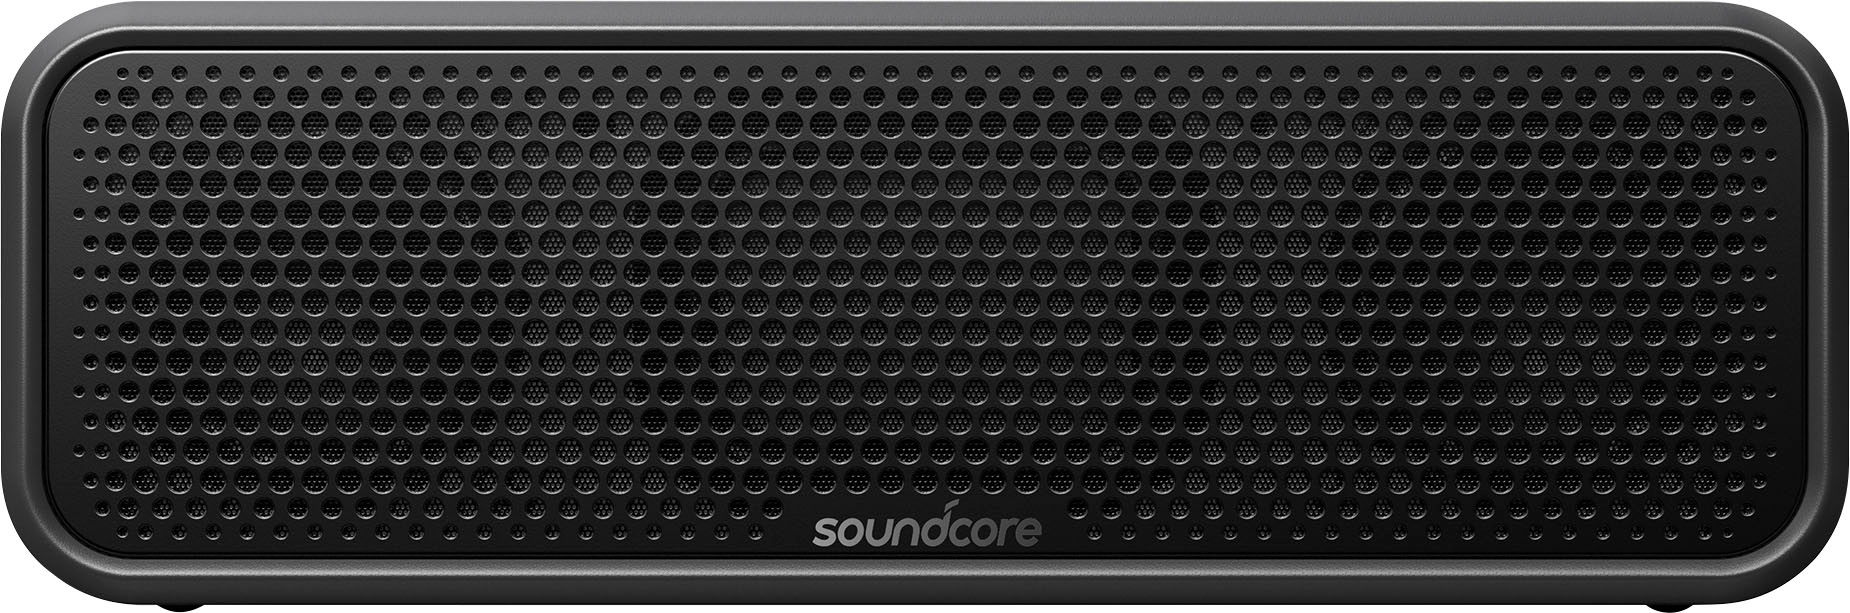 Soundcore by Best A3125Z11 Portable - Buy Black 2 Select Bluetooth Anker Speaker Waterproof